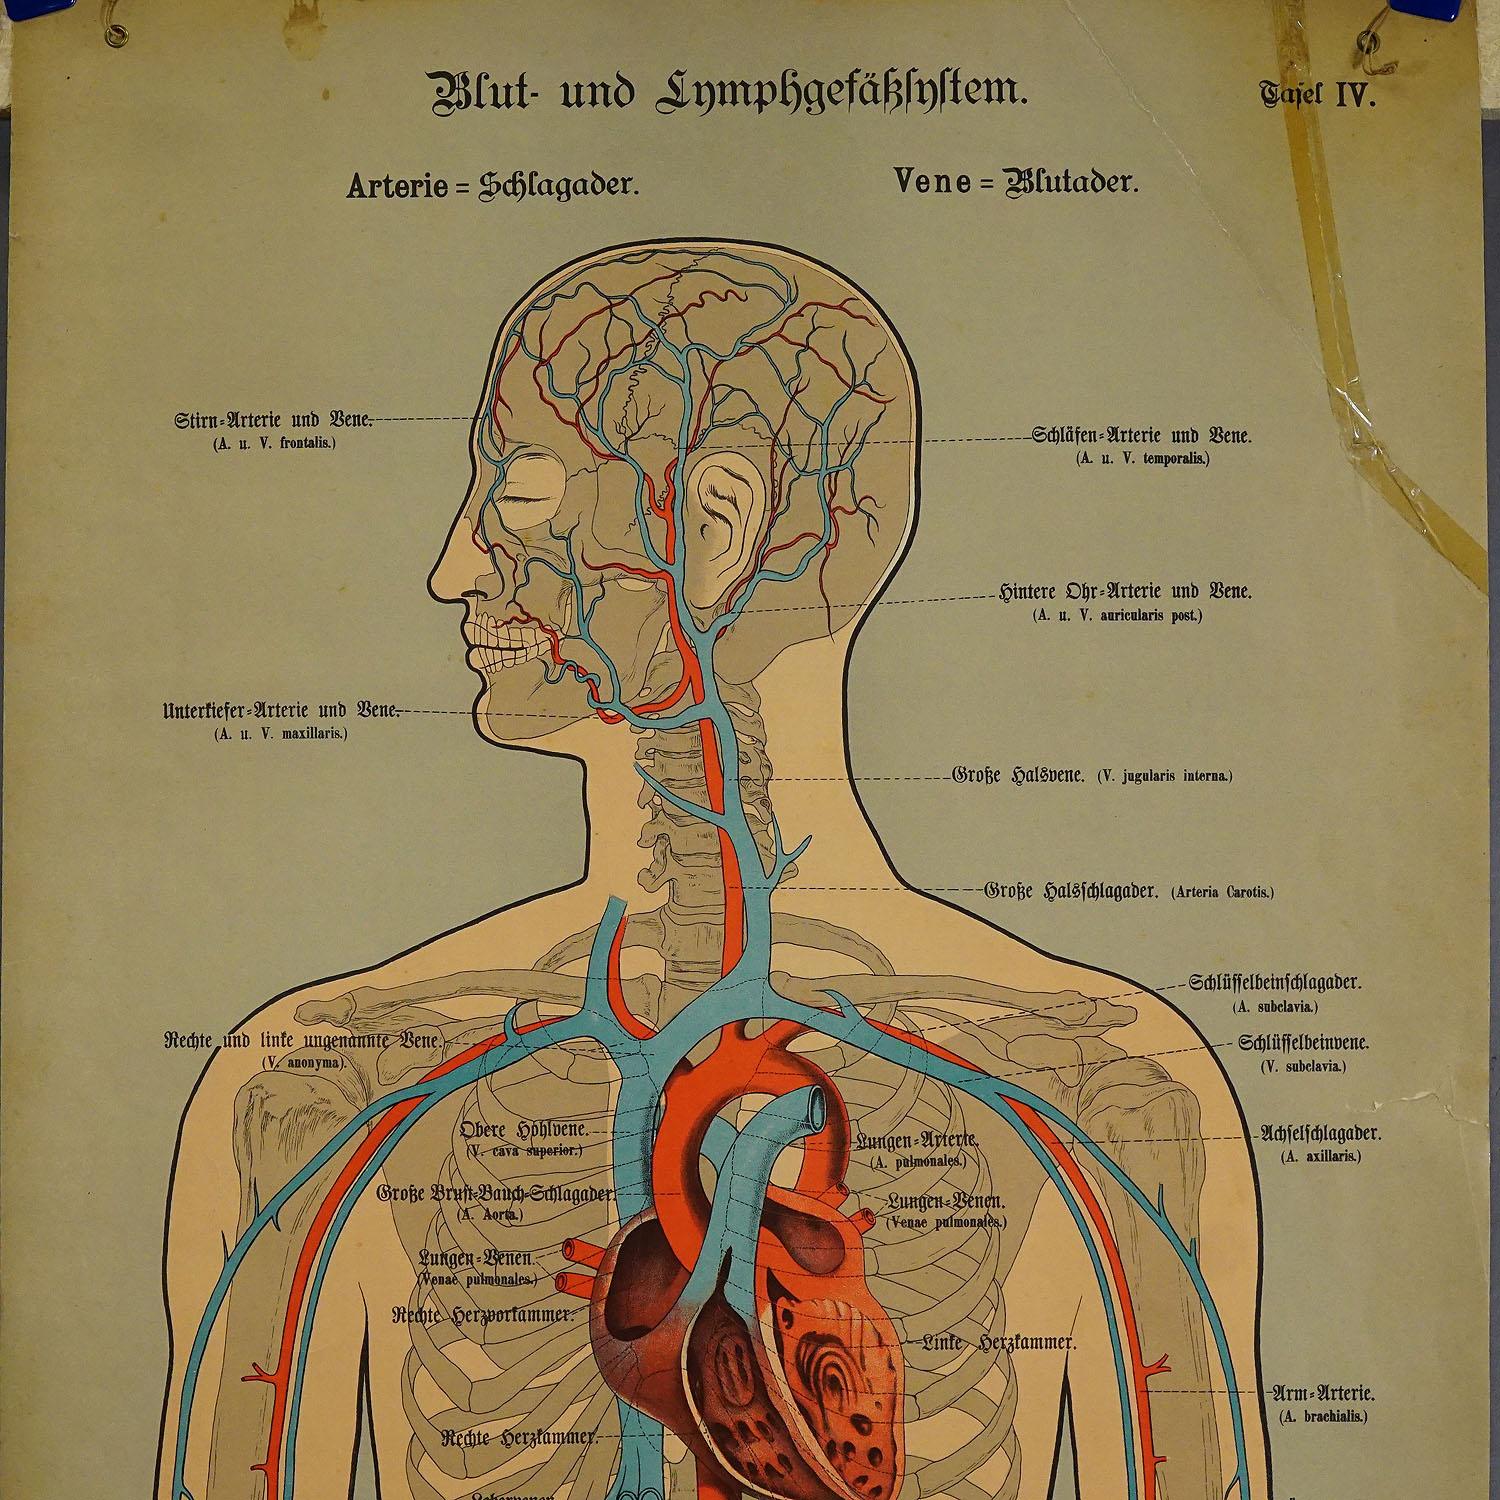 Une rare planche anatomique murale de 19 carats représentant les vaisseaux lymphatiques et sanguins de l'homme. Sur les côtés, une description détaillée en langue allemande. Imprimé sur carton. Publié par J. F. Schreiber, Allemagne, vers 1900. Bon